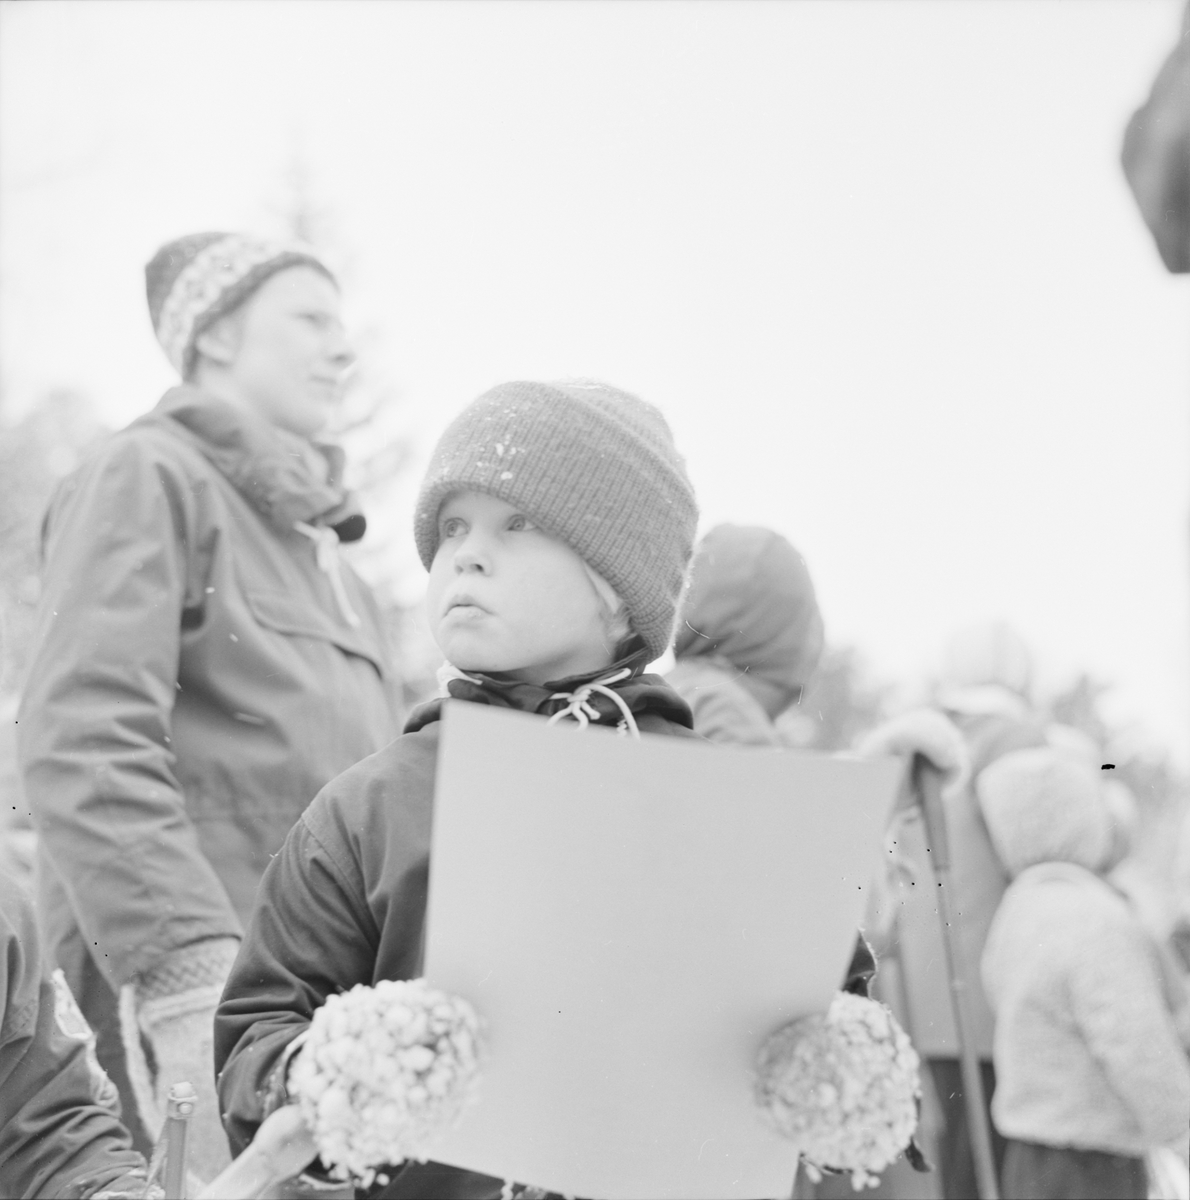 Skidåkning - "examen på skidor vid Djupvikstorpet", Uppland 1962